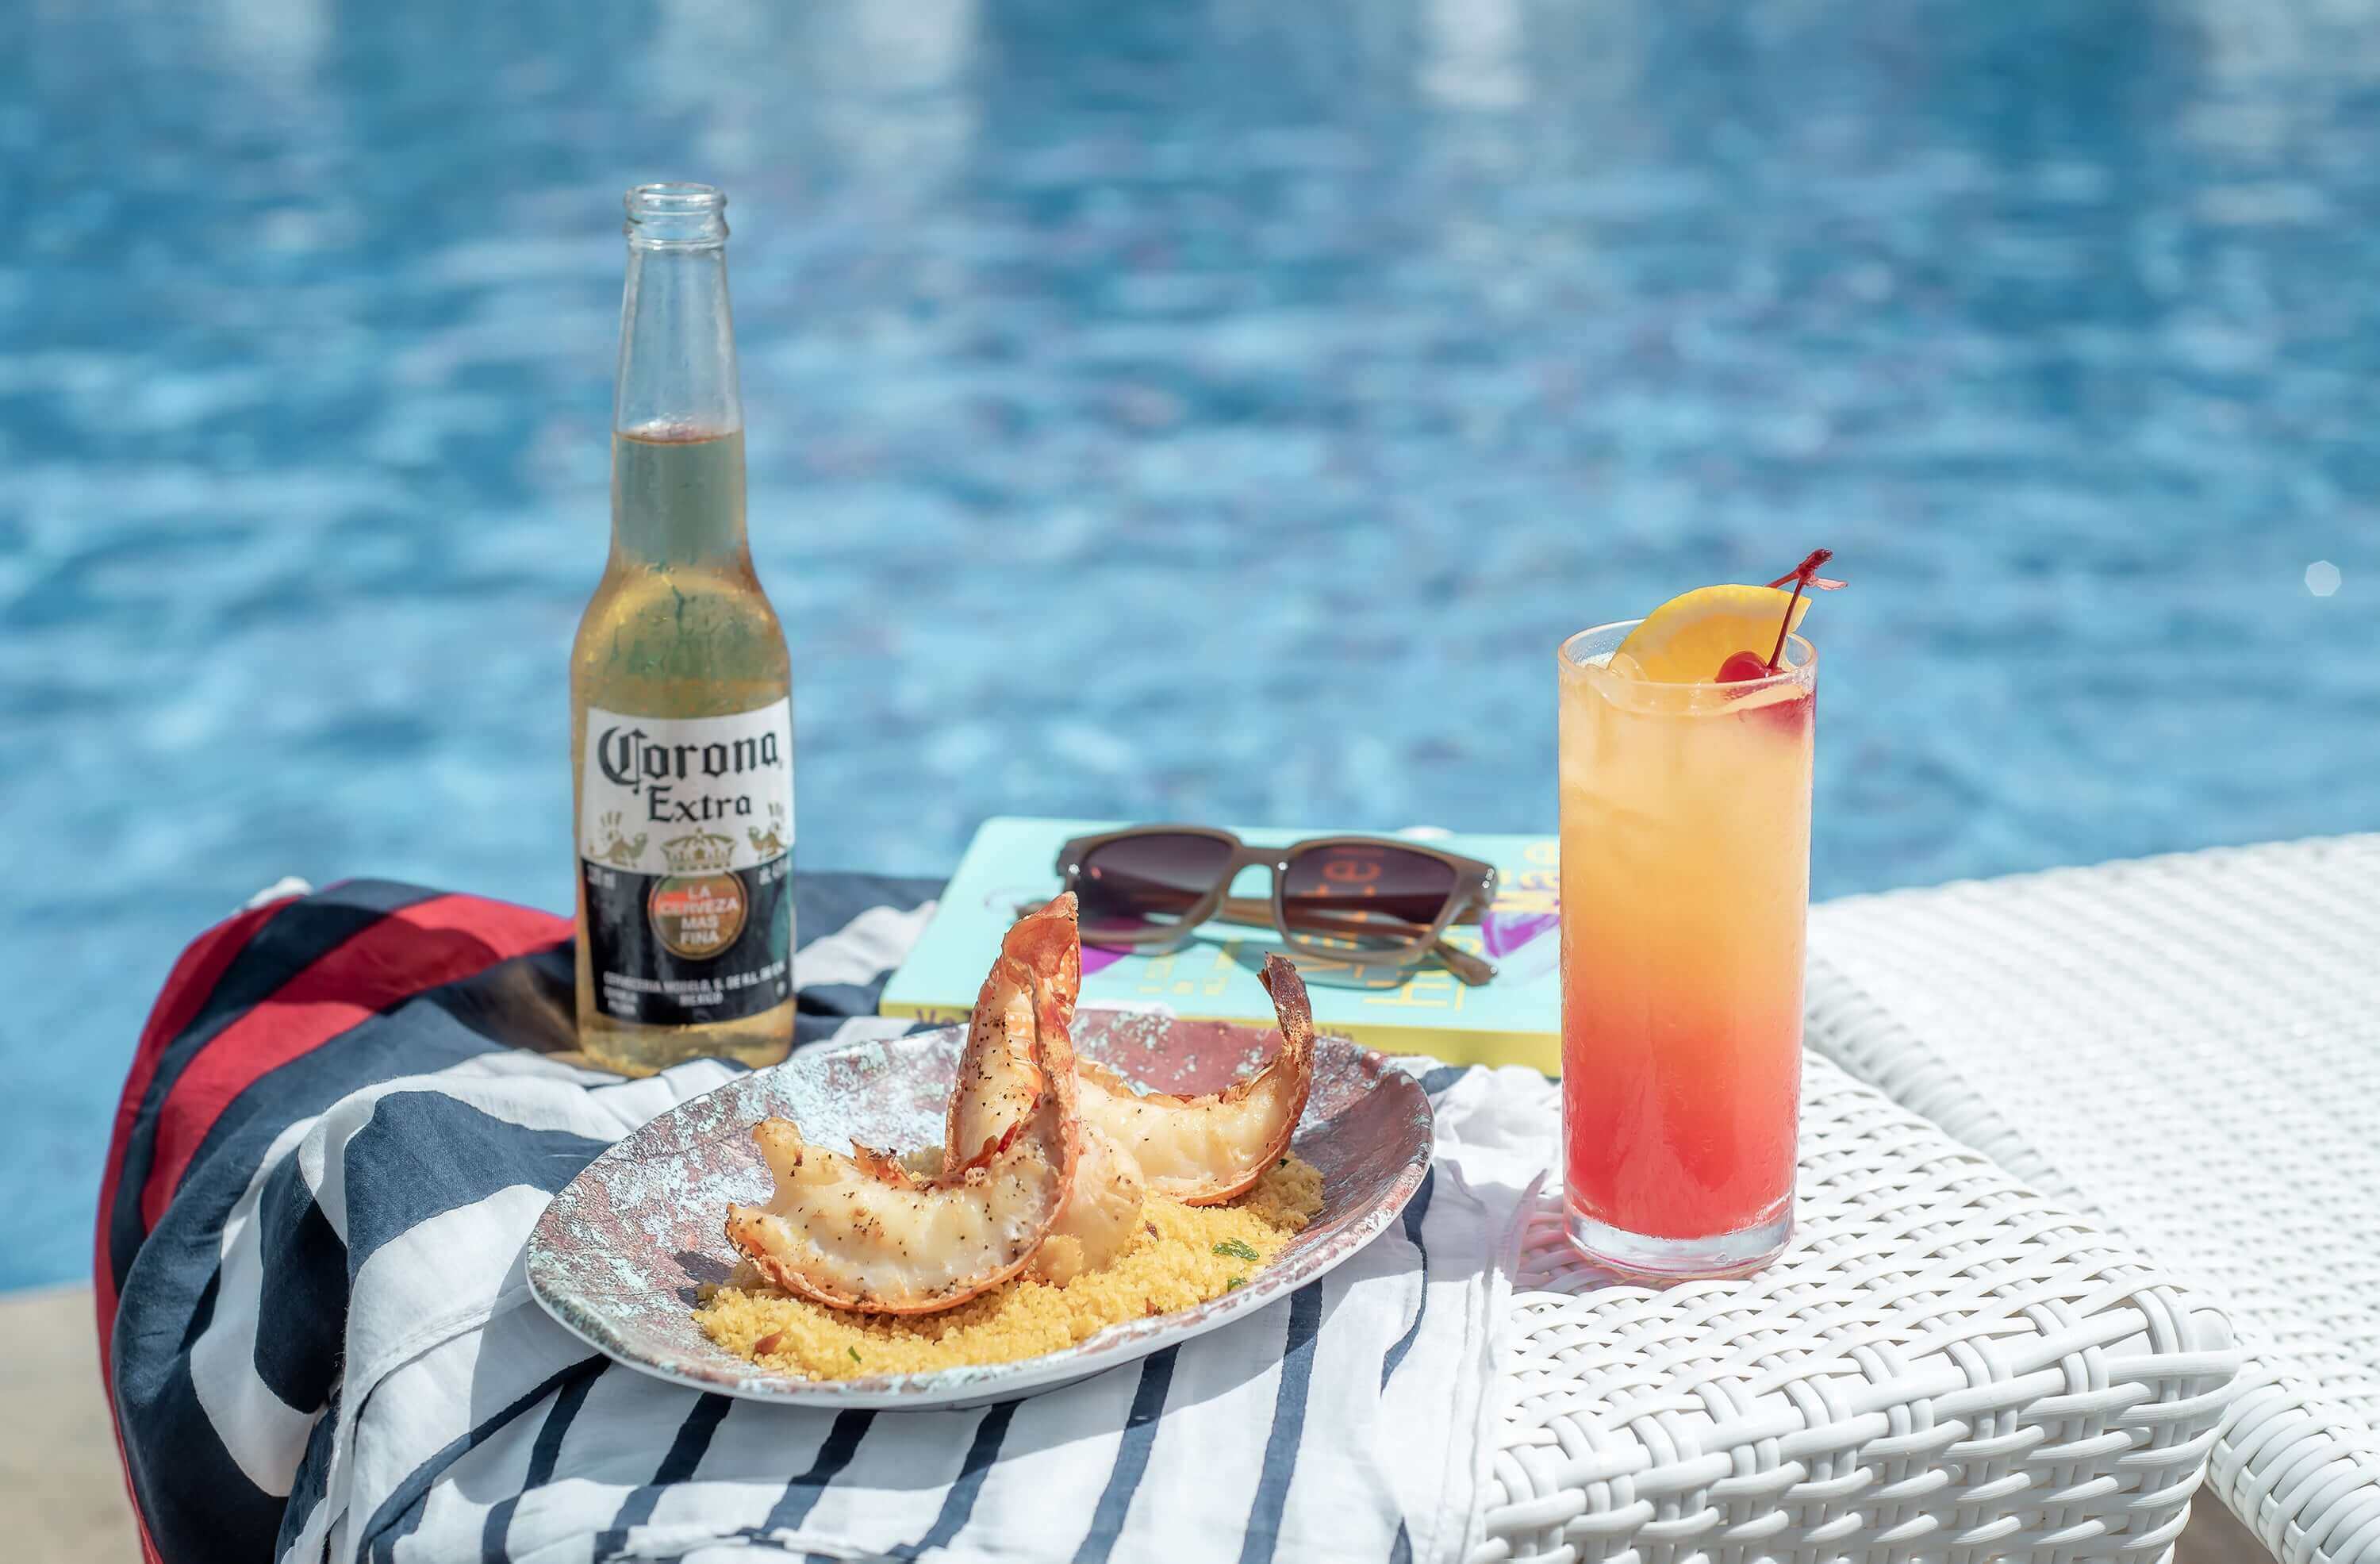 Pequena mesa na borda da piscina com cerveja Corona, porção de caudas de lagosta e drink Sex On The Beach. Canga, livro e óculos de sol ao redor.